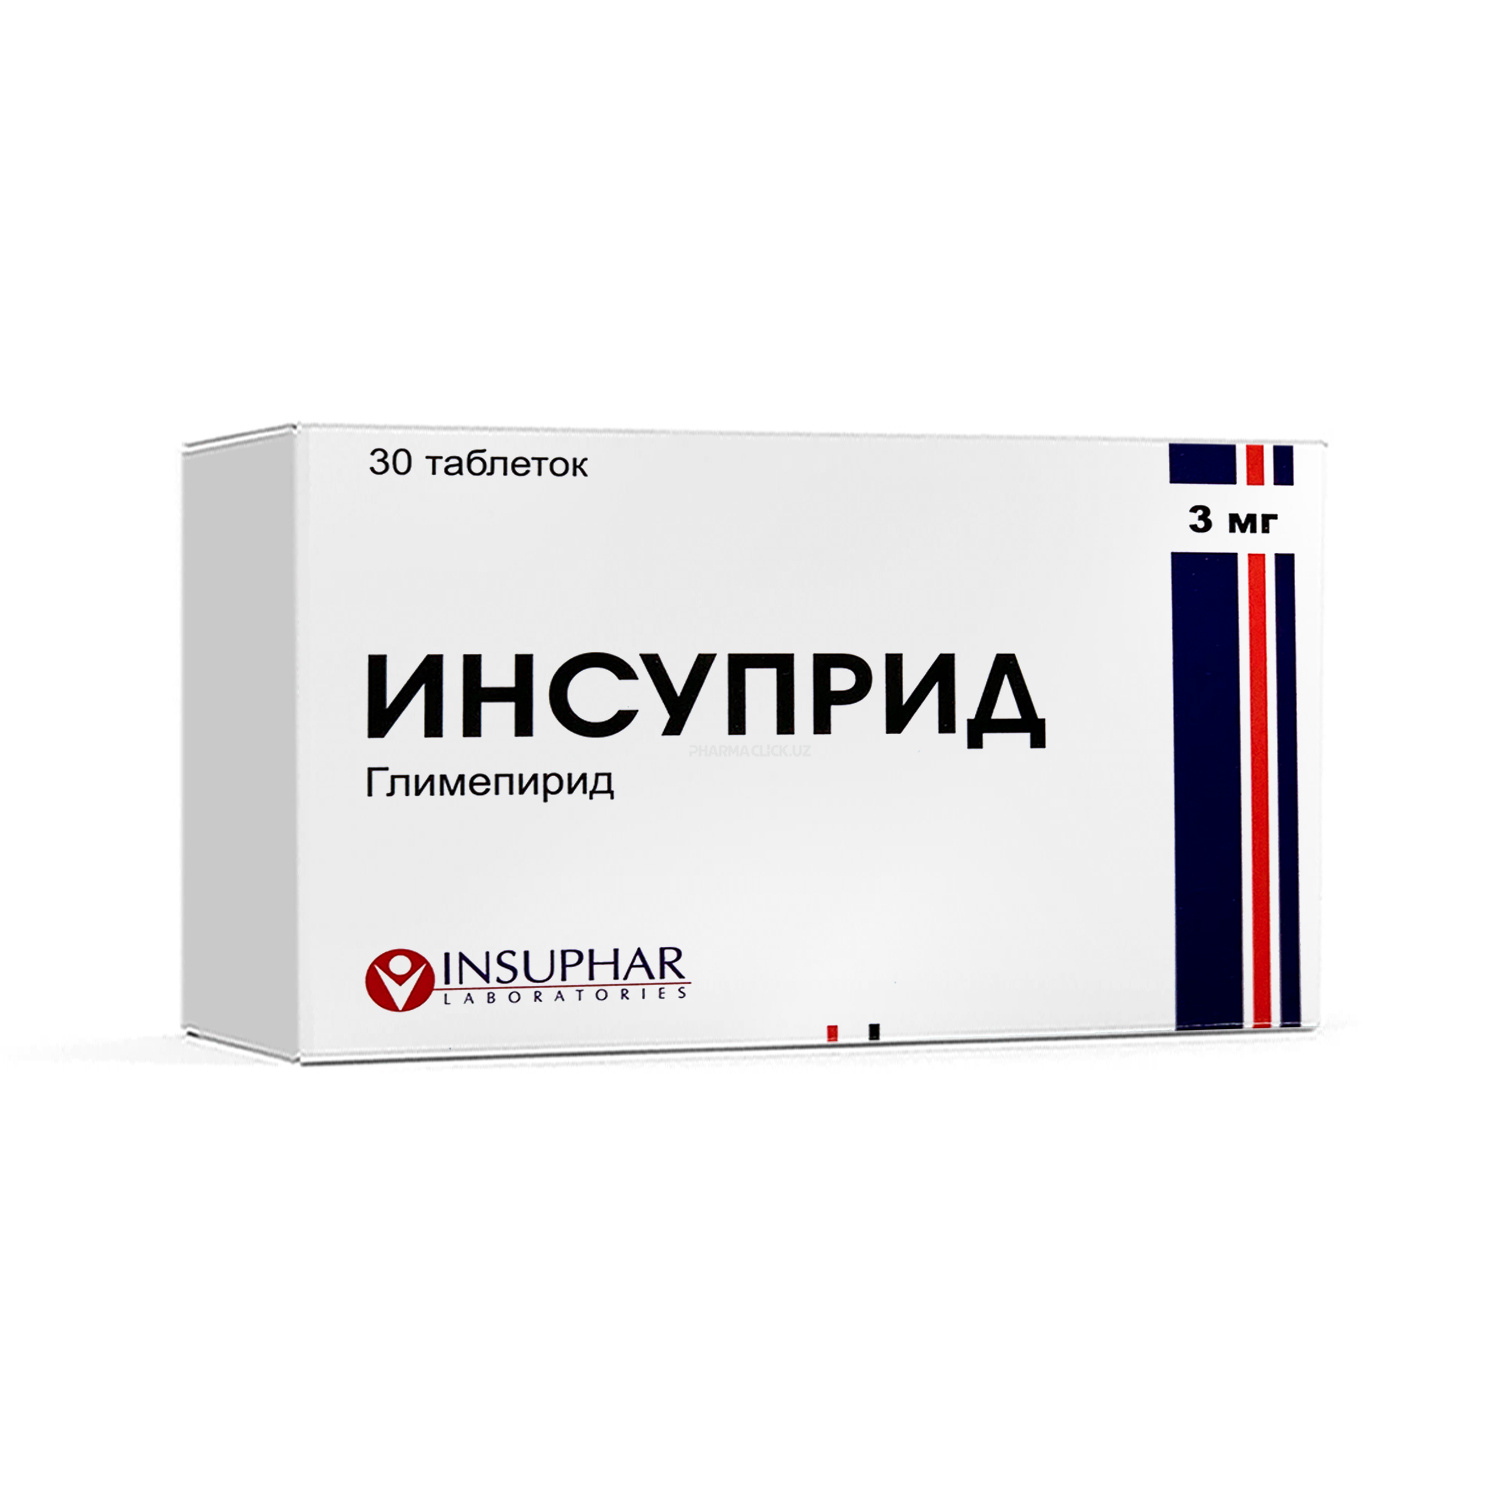 Insuprid tabletki 3 mg №30